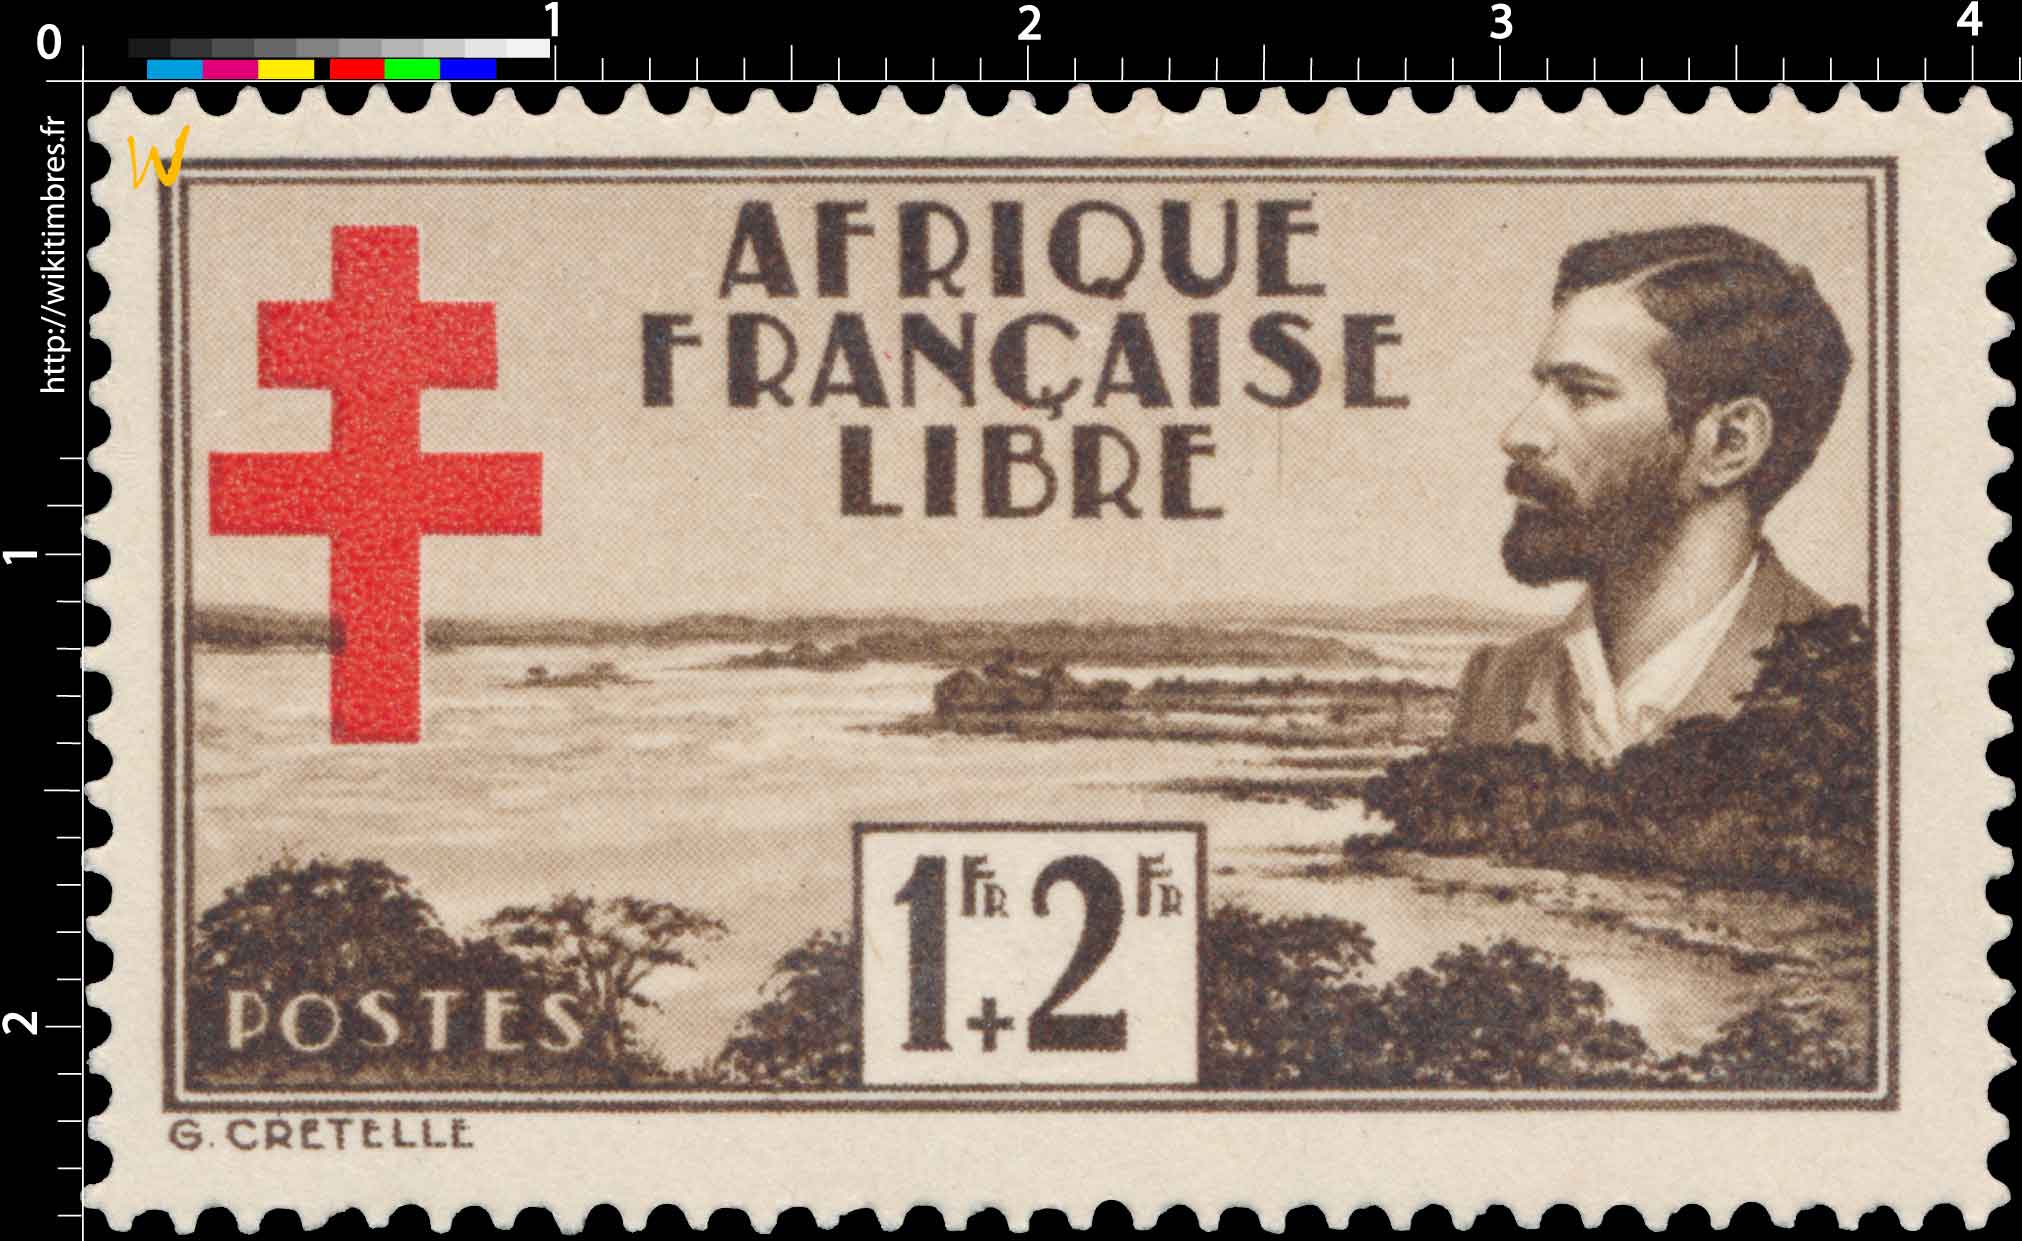 Afrique française libre